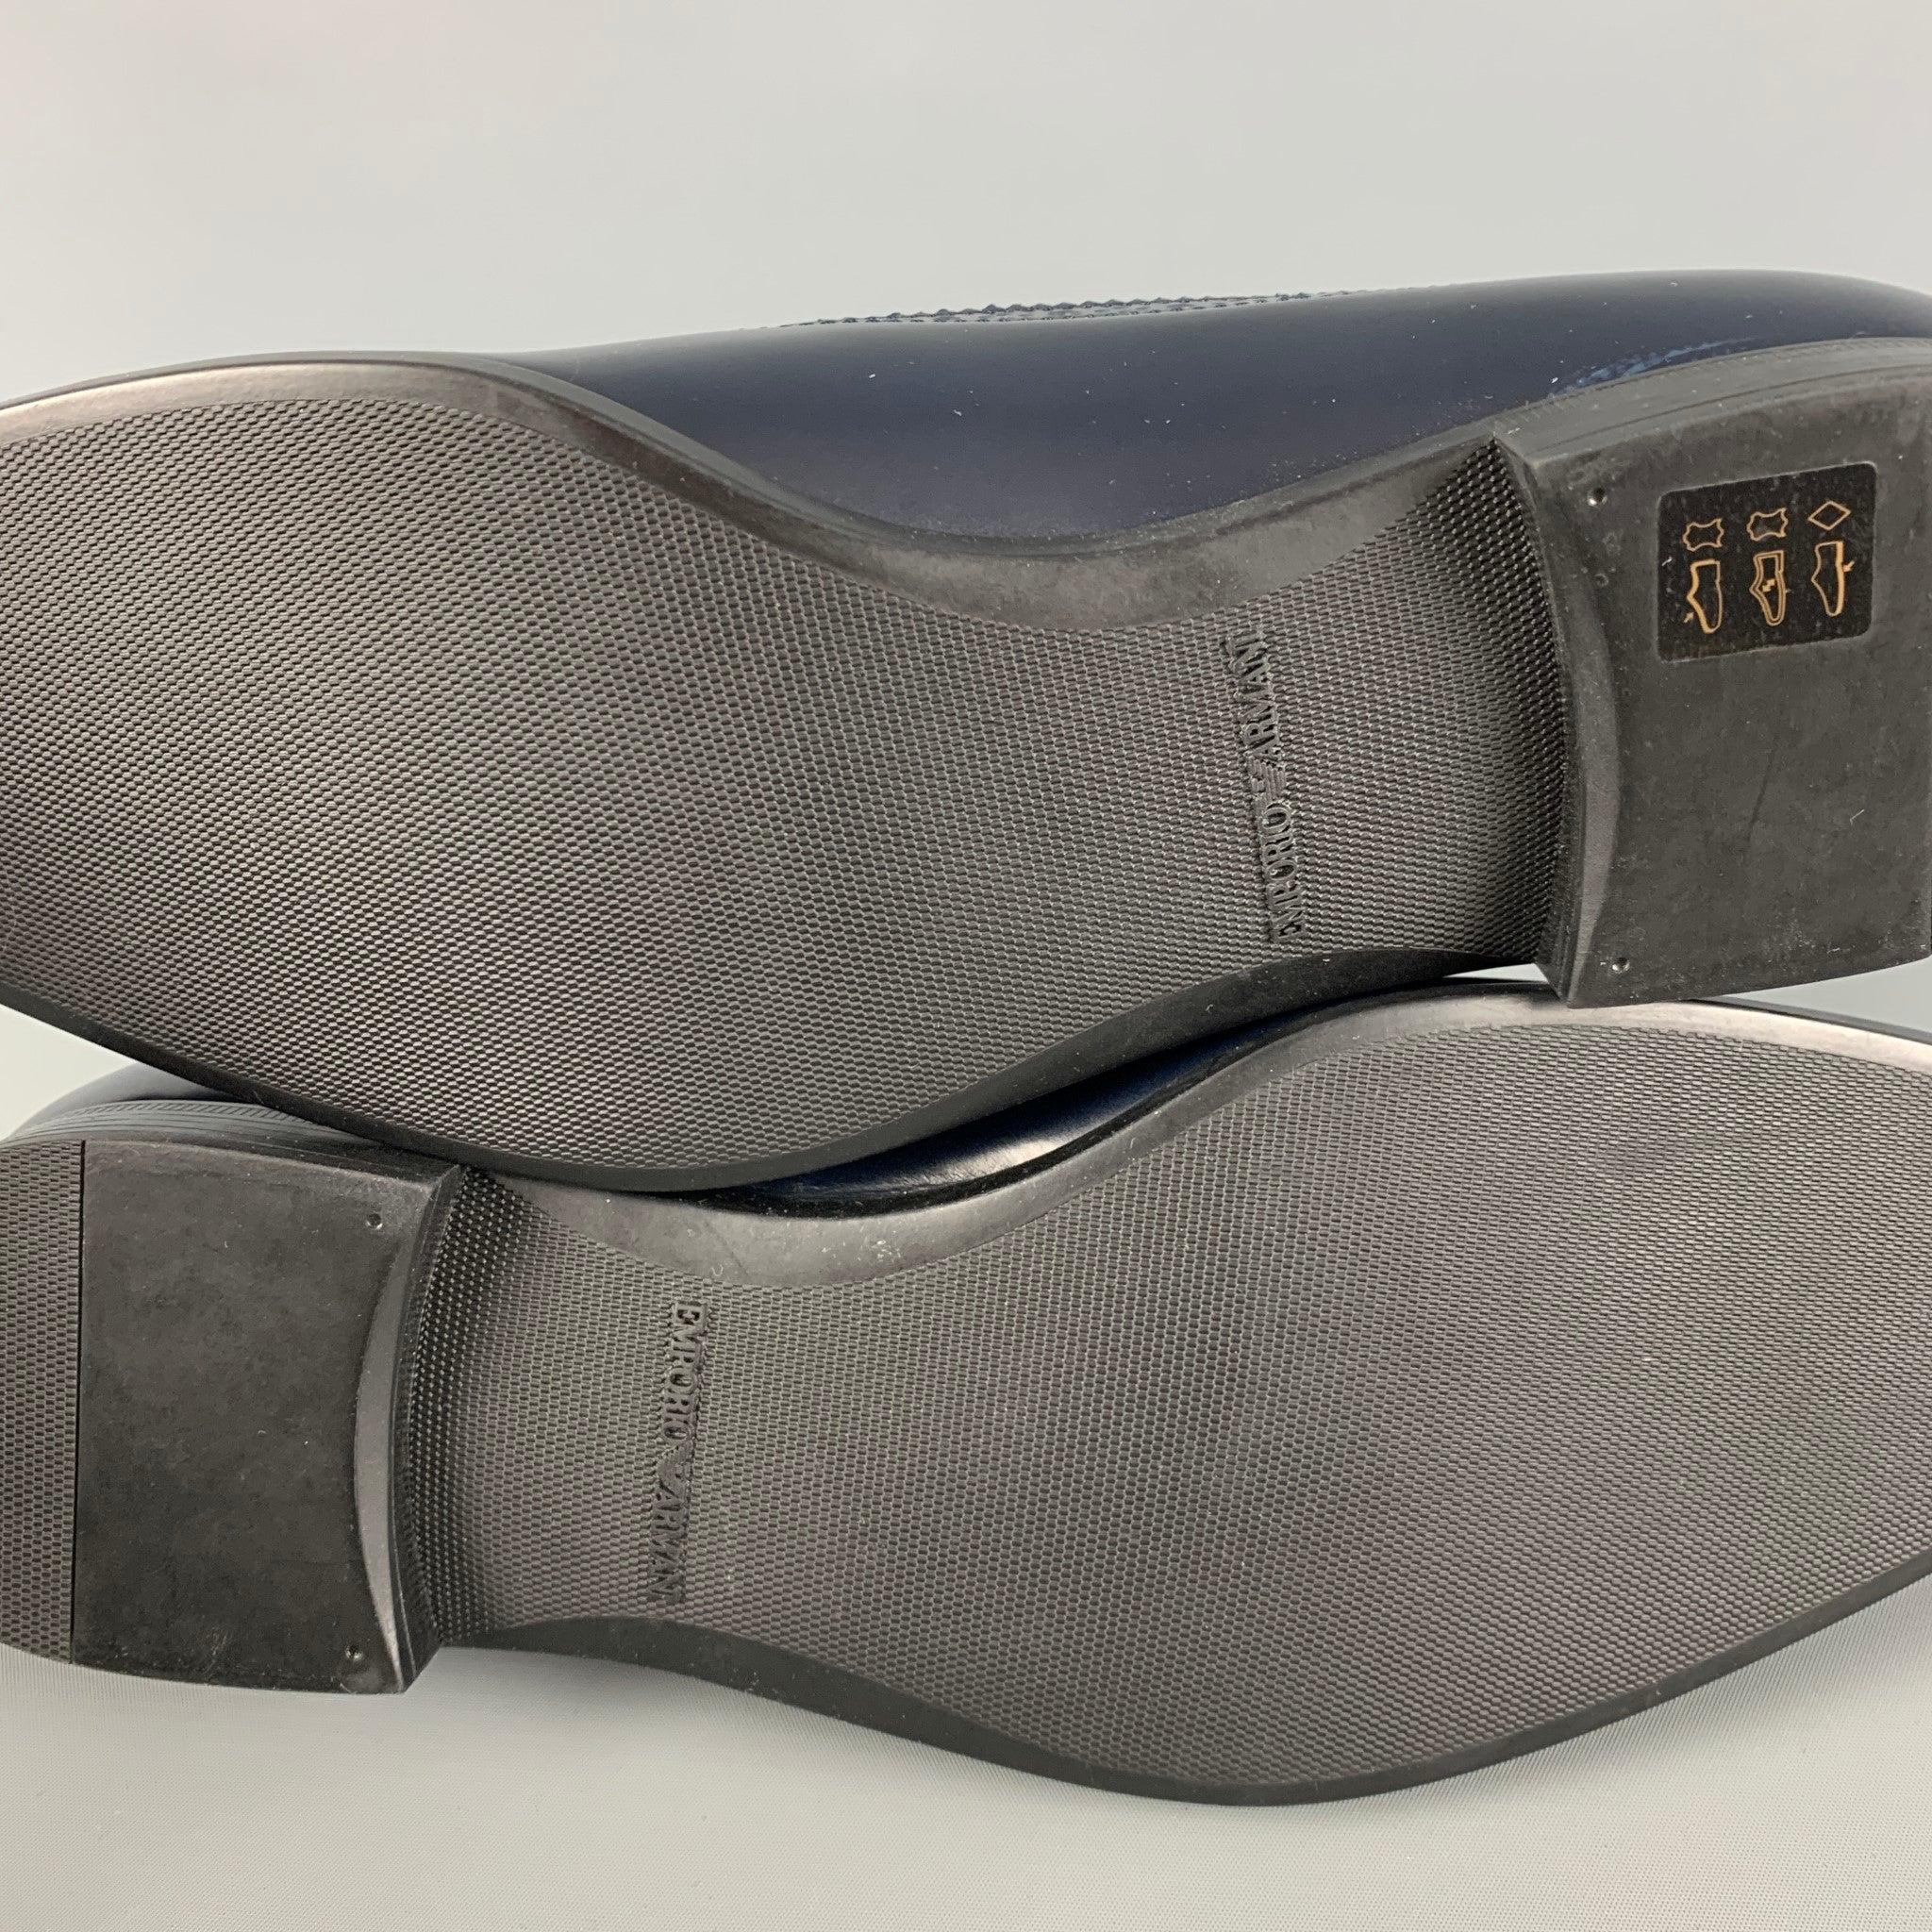 EMPORIO ARMANI - Chaussures à lacets en cuir perforé bleu marine, taille 9 4